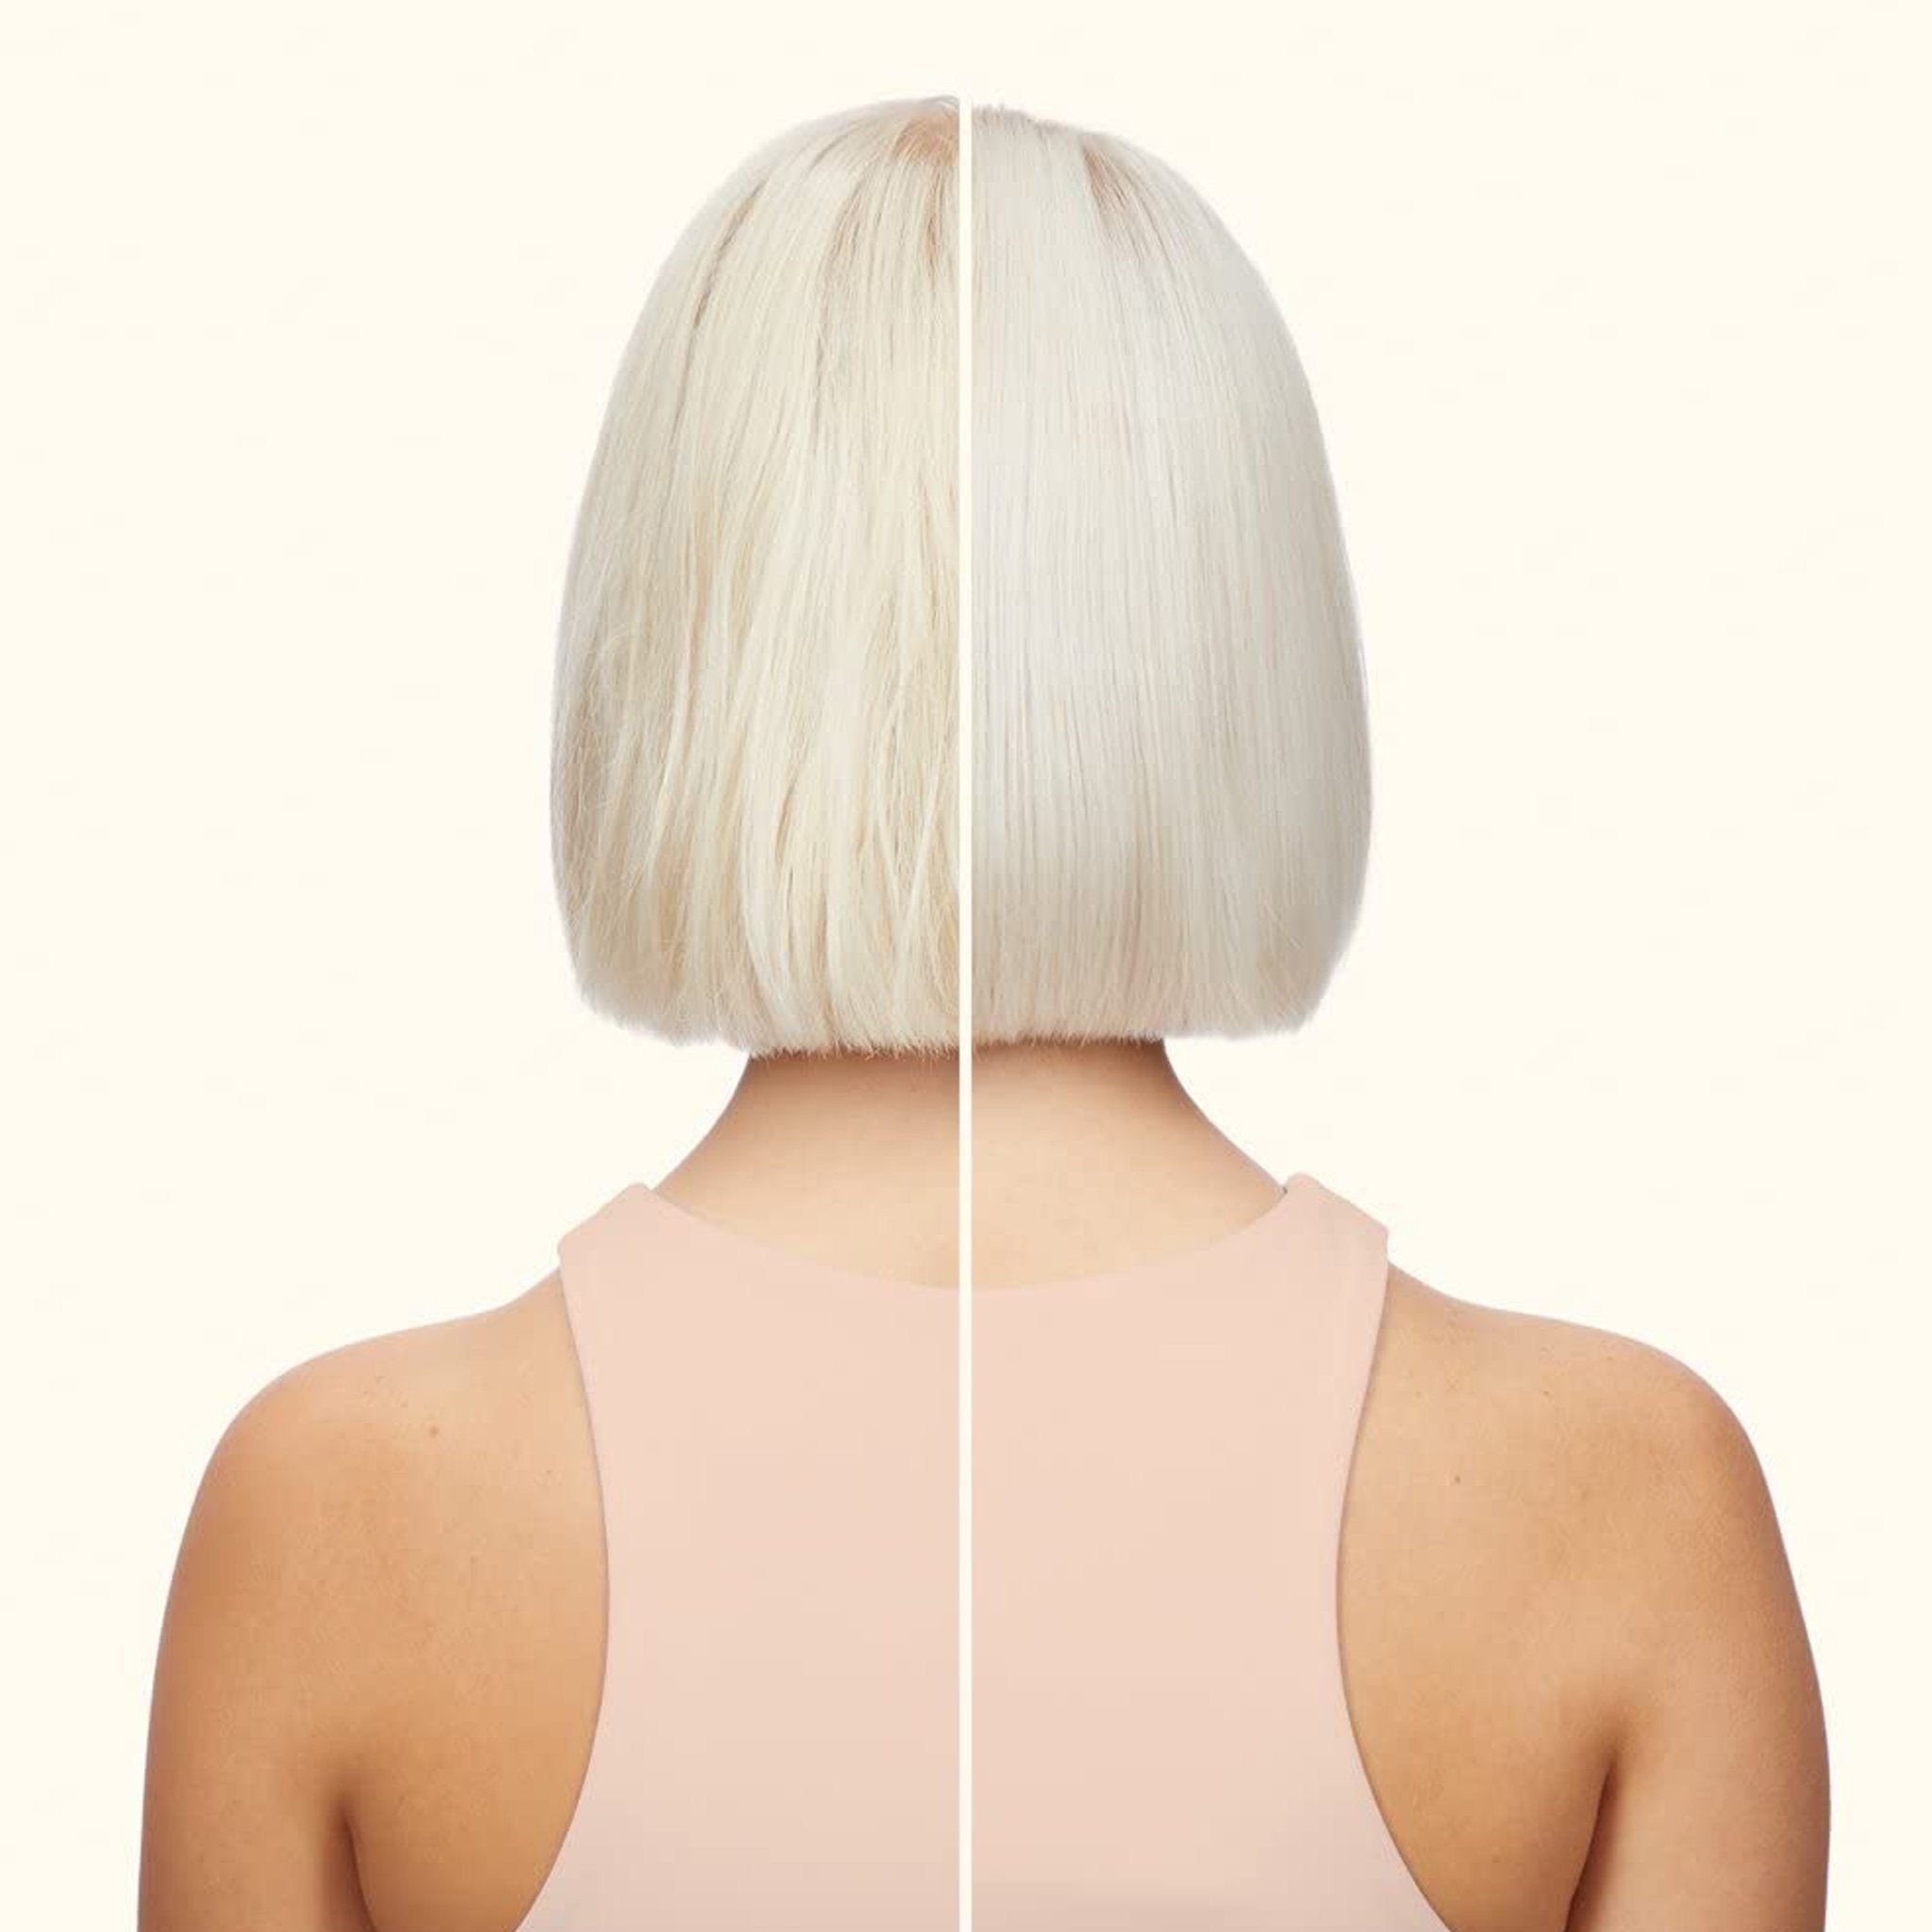 Amika. Shampoing Réparateur pour Blonds Froids Bust Your Brass - 300 ml - Concept C. Shop